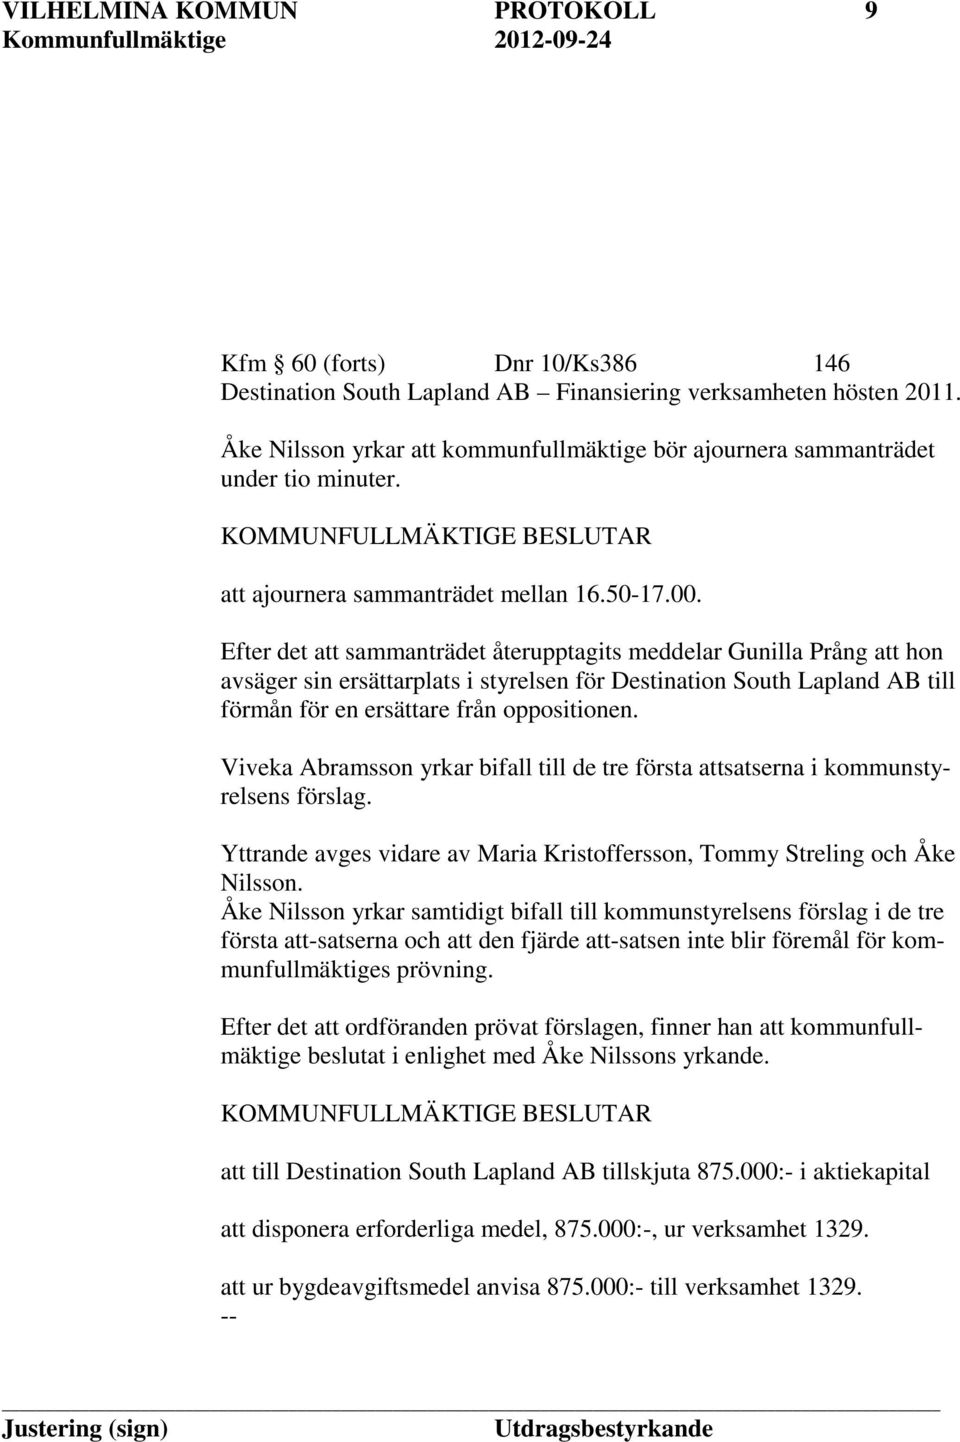 Efter det att sammanträdet återupptagits meddelar Gunilla Prång att hon avsäger sin ersättarplats i styrelsen för Destination South Lapland AB till förmån för en ersättare från oppositionen.